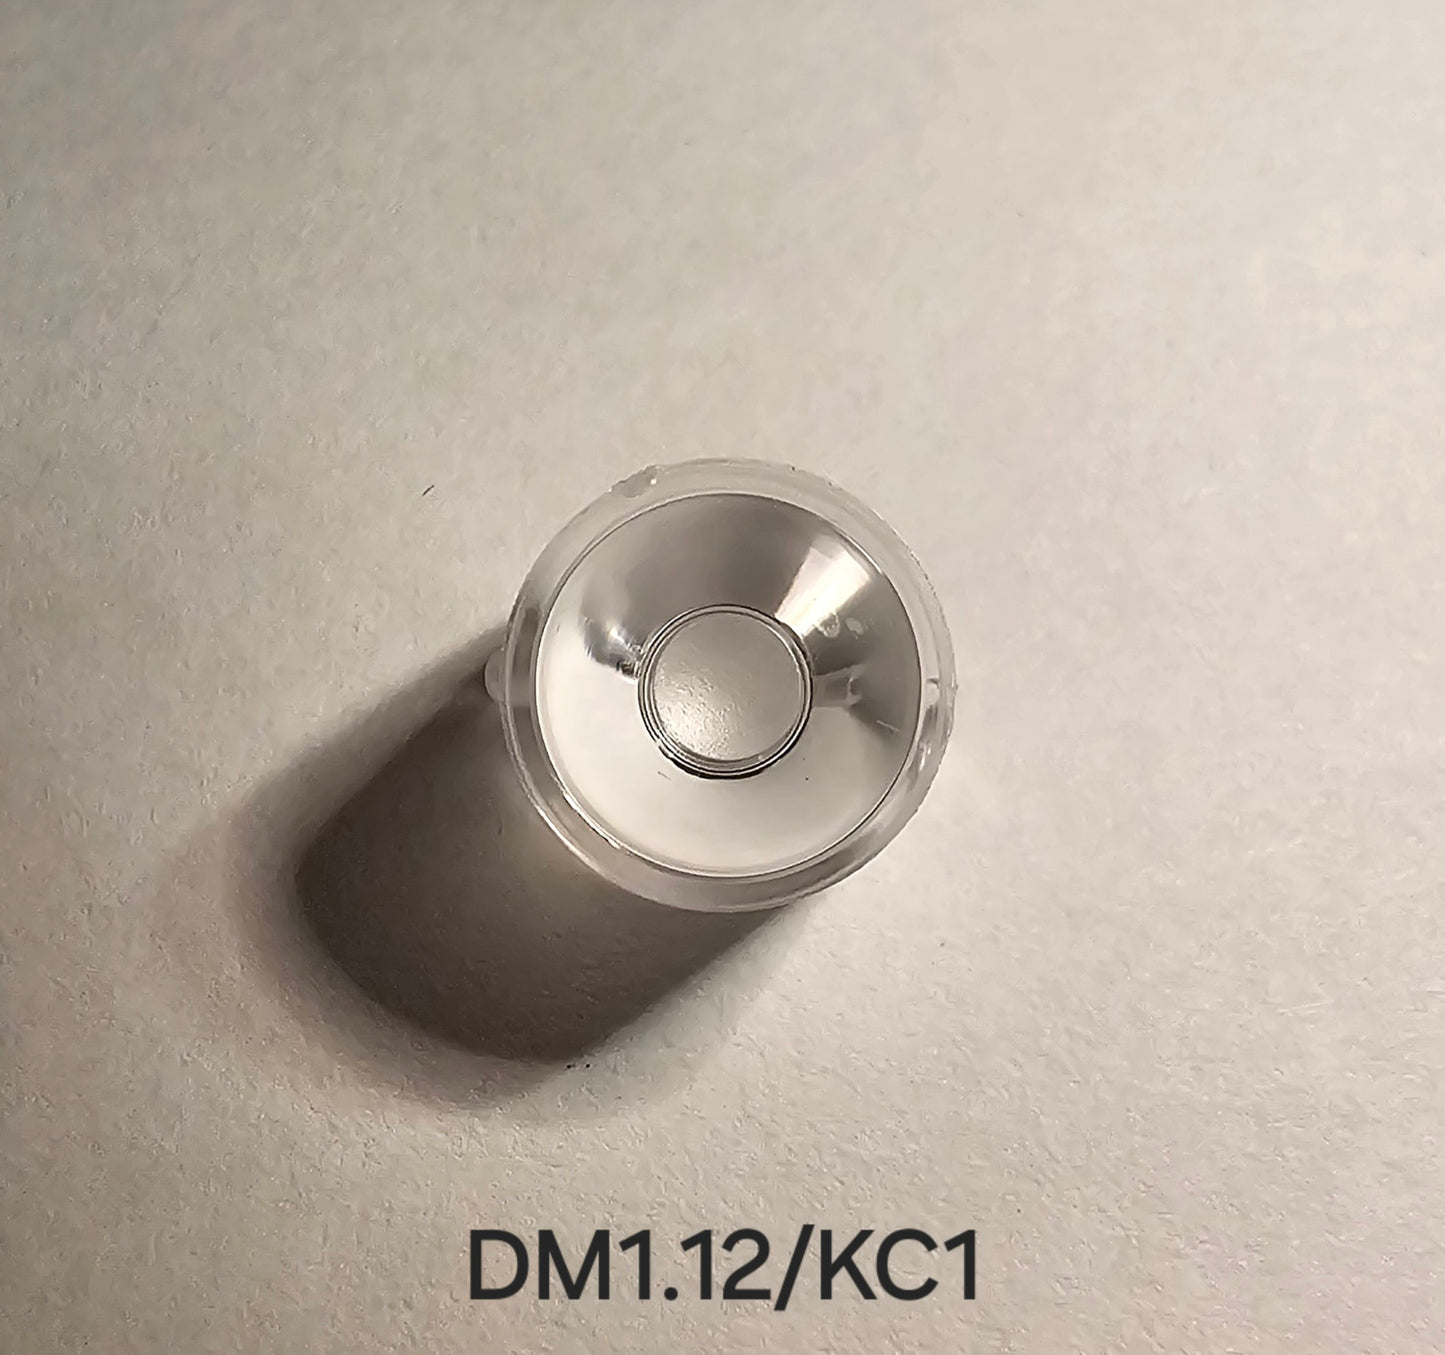 Emisar D18 DM1.12 D2 KC1 Standard/Floody Optics DM1.12/KC1 SPOT